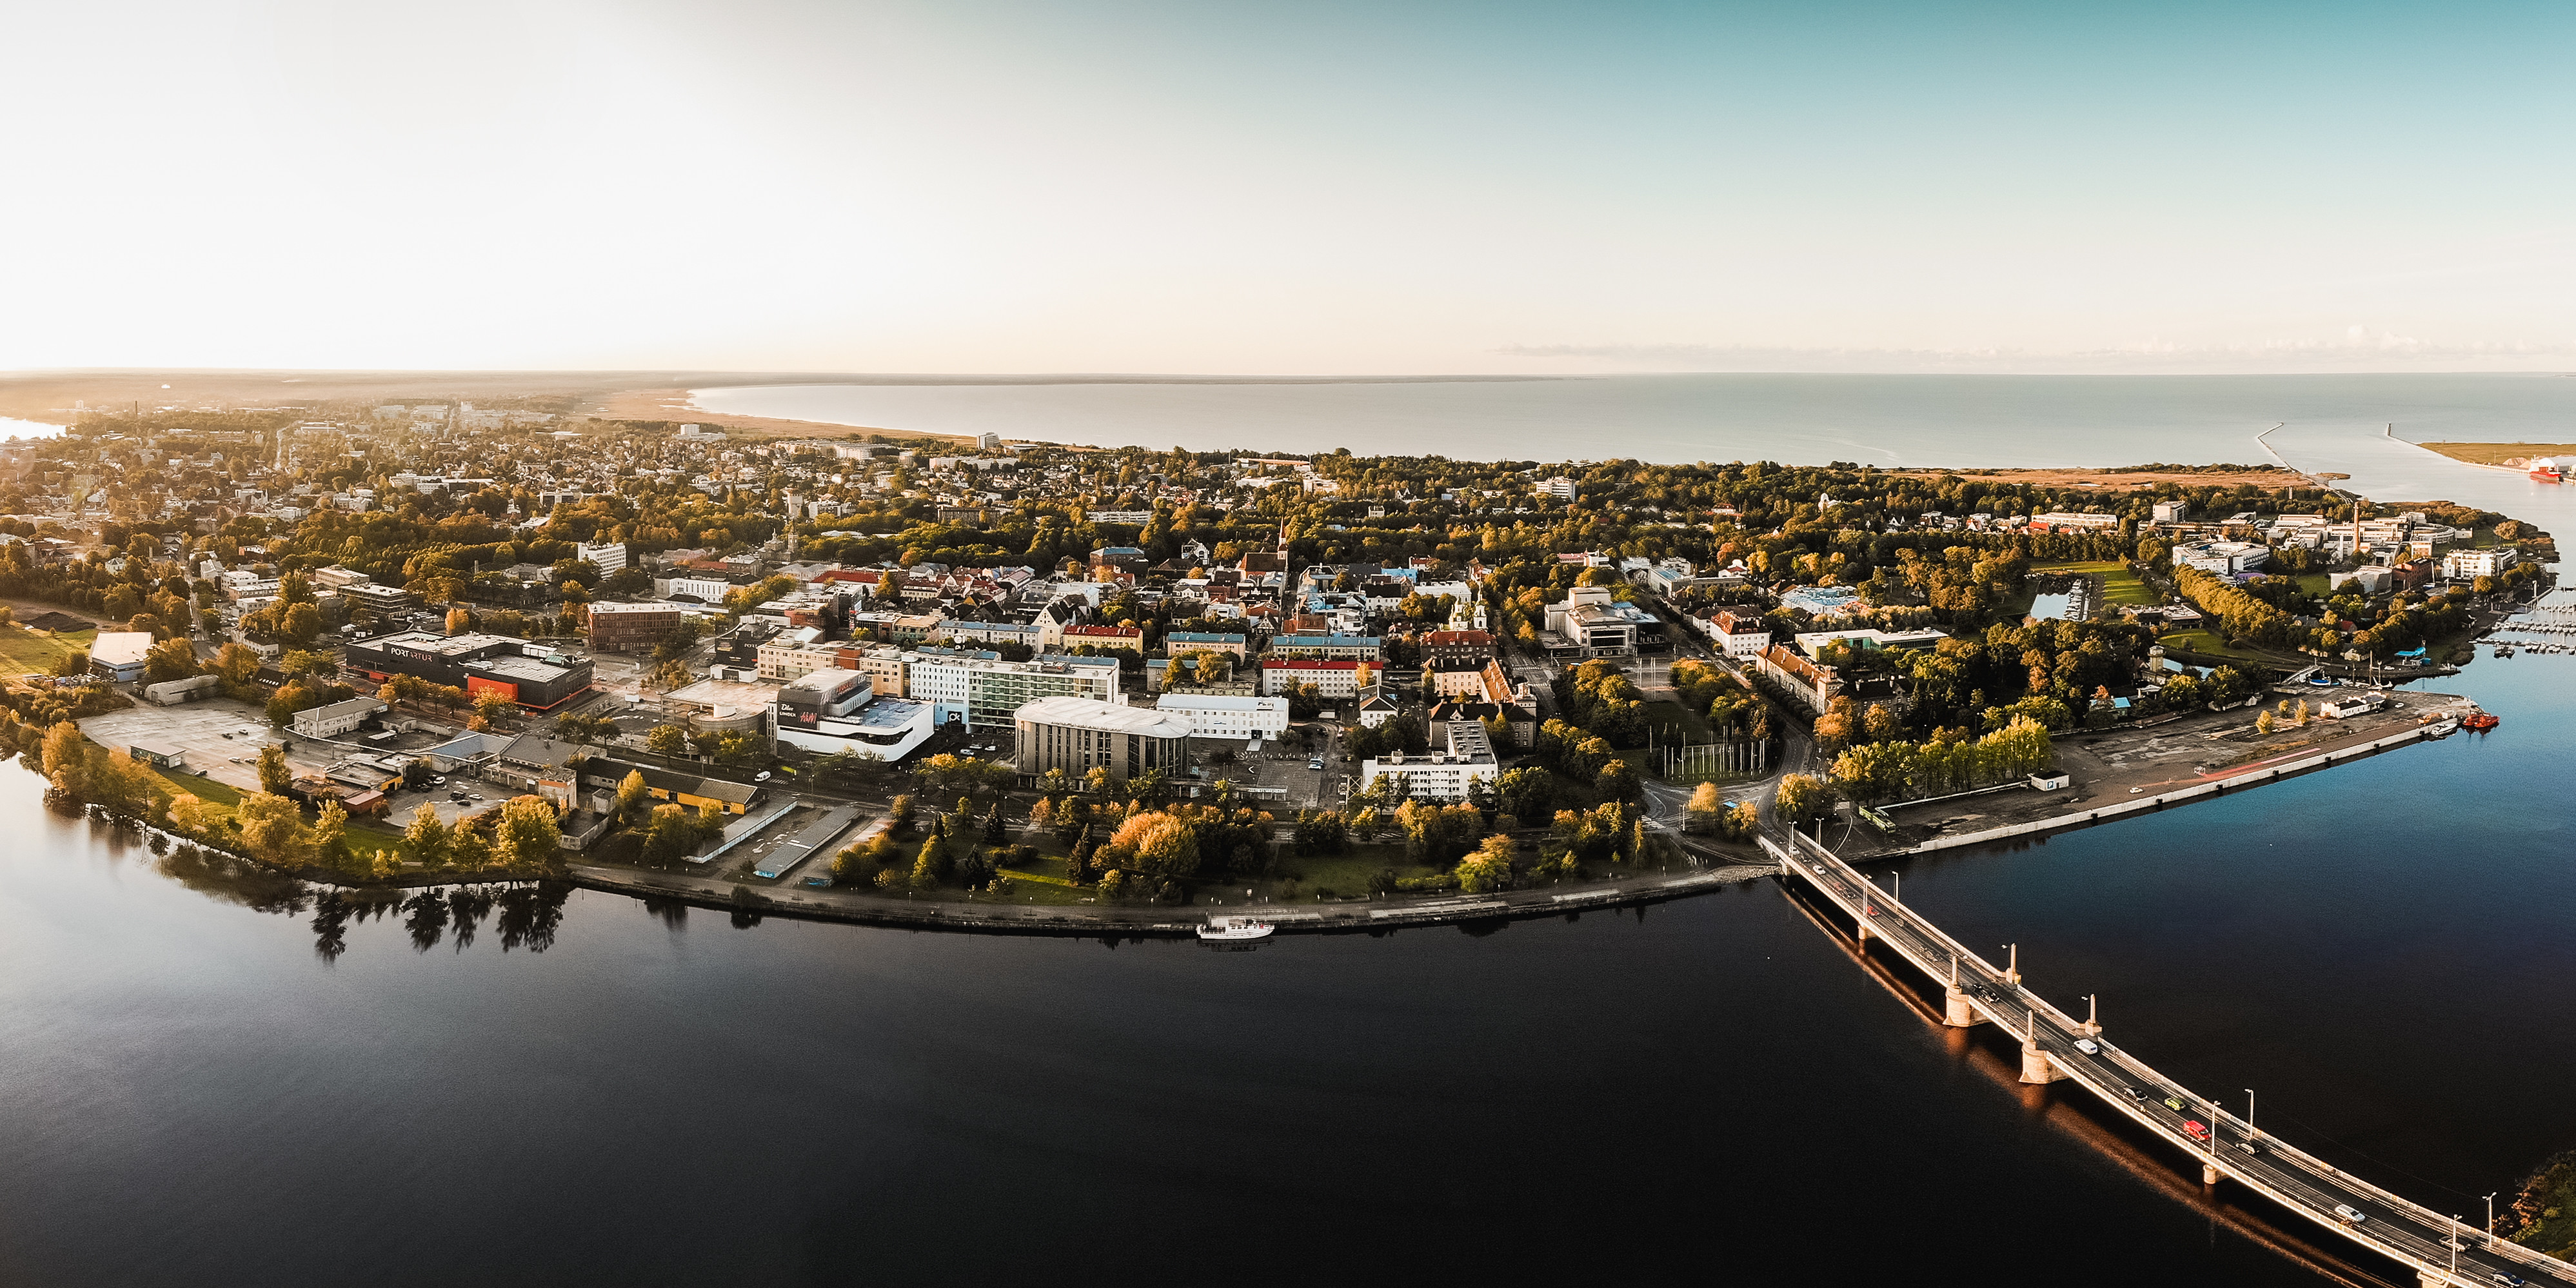 Pärnu